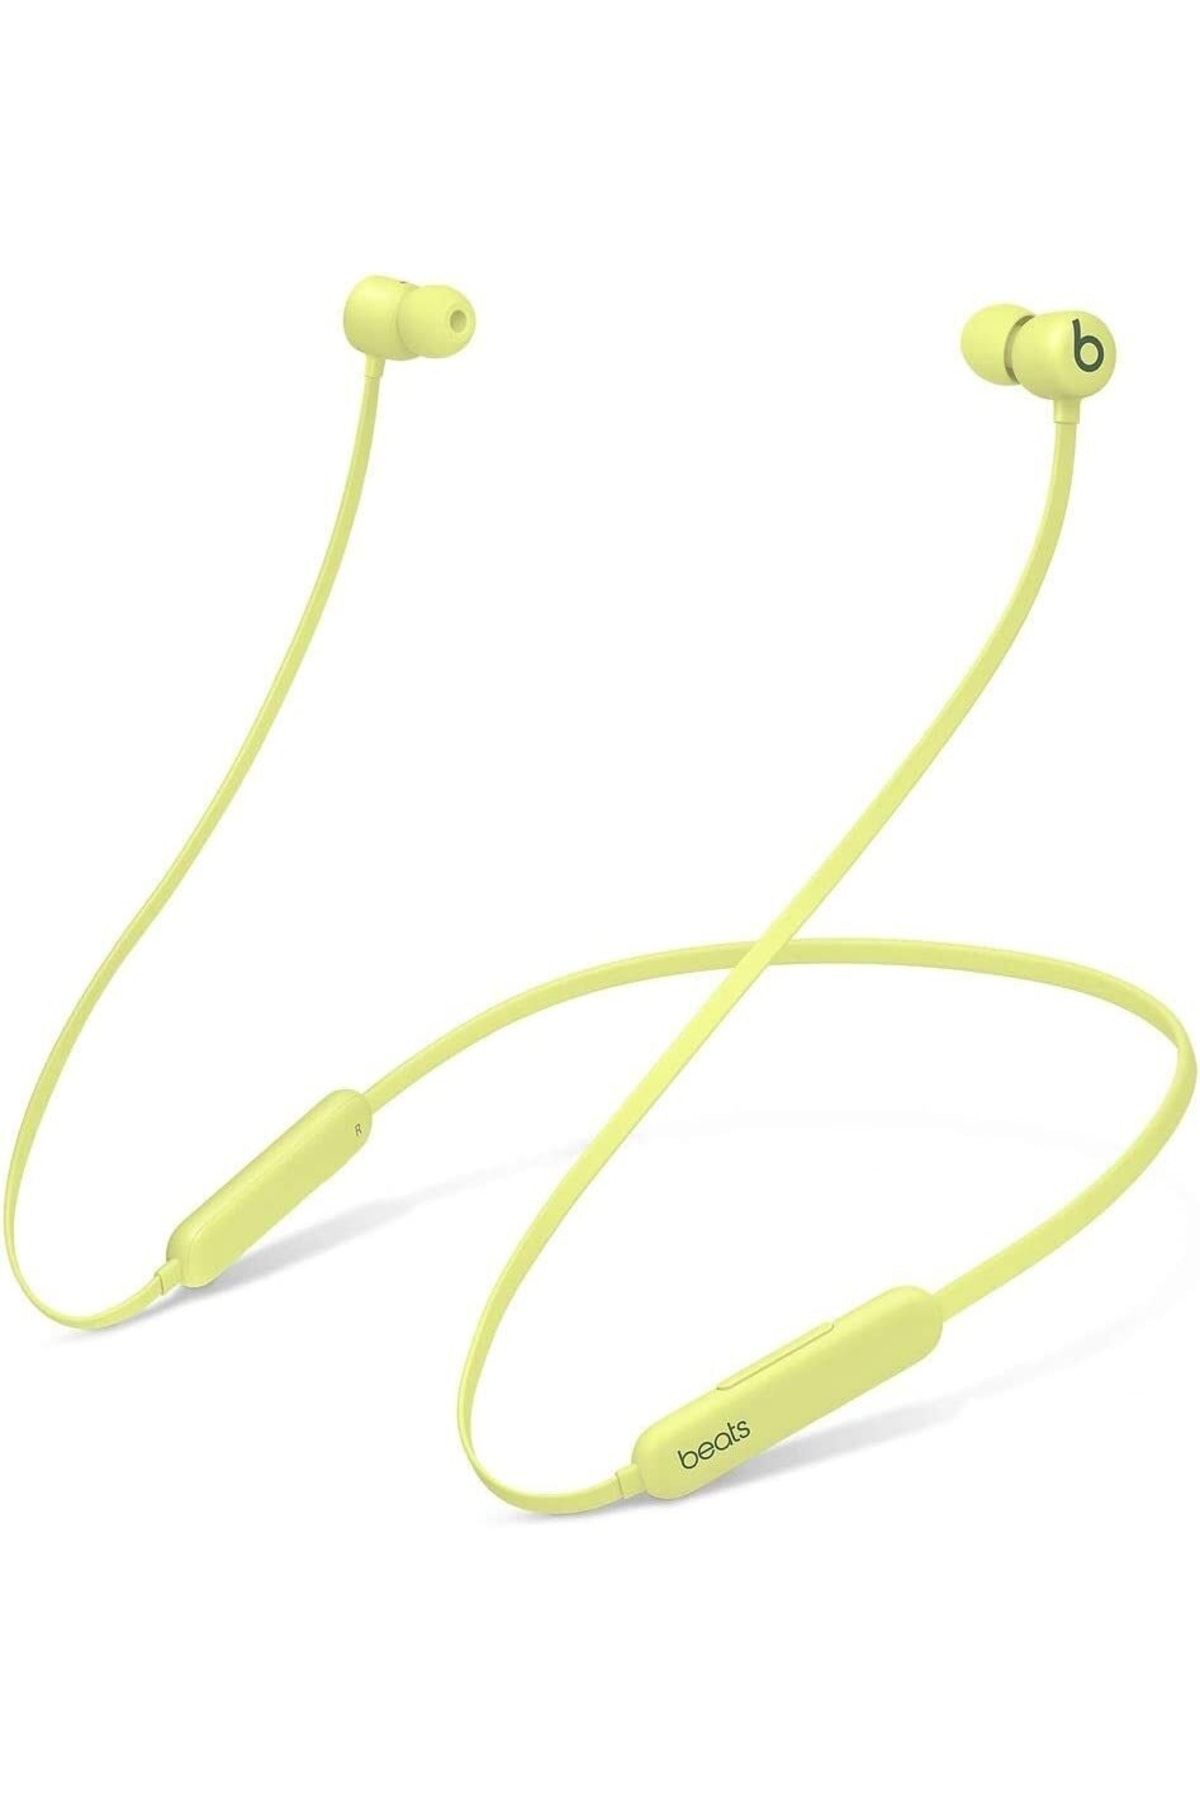 Beats Flex - Tüm Gün Kullanım İçin Kablosuz Kulak İçi Kulaklık - Yuzu Sarısı